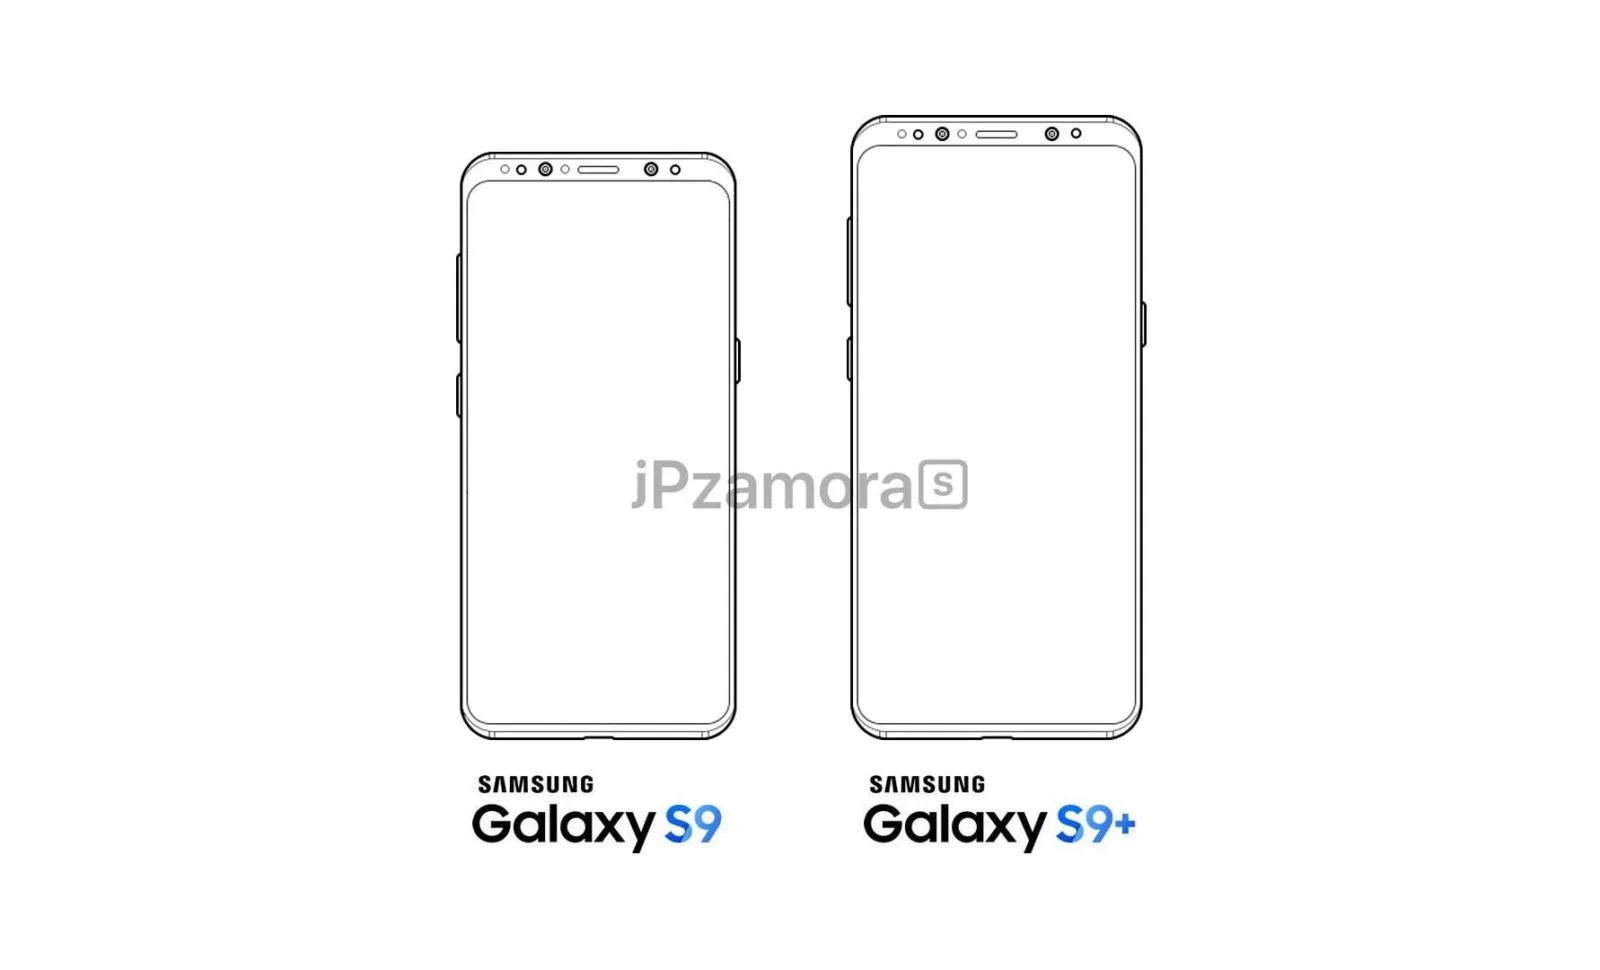 Появились рендеры Samsung Galaxy S9: различия в сравнении с Galaxy S8 минимальны - фото 1